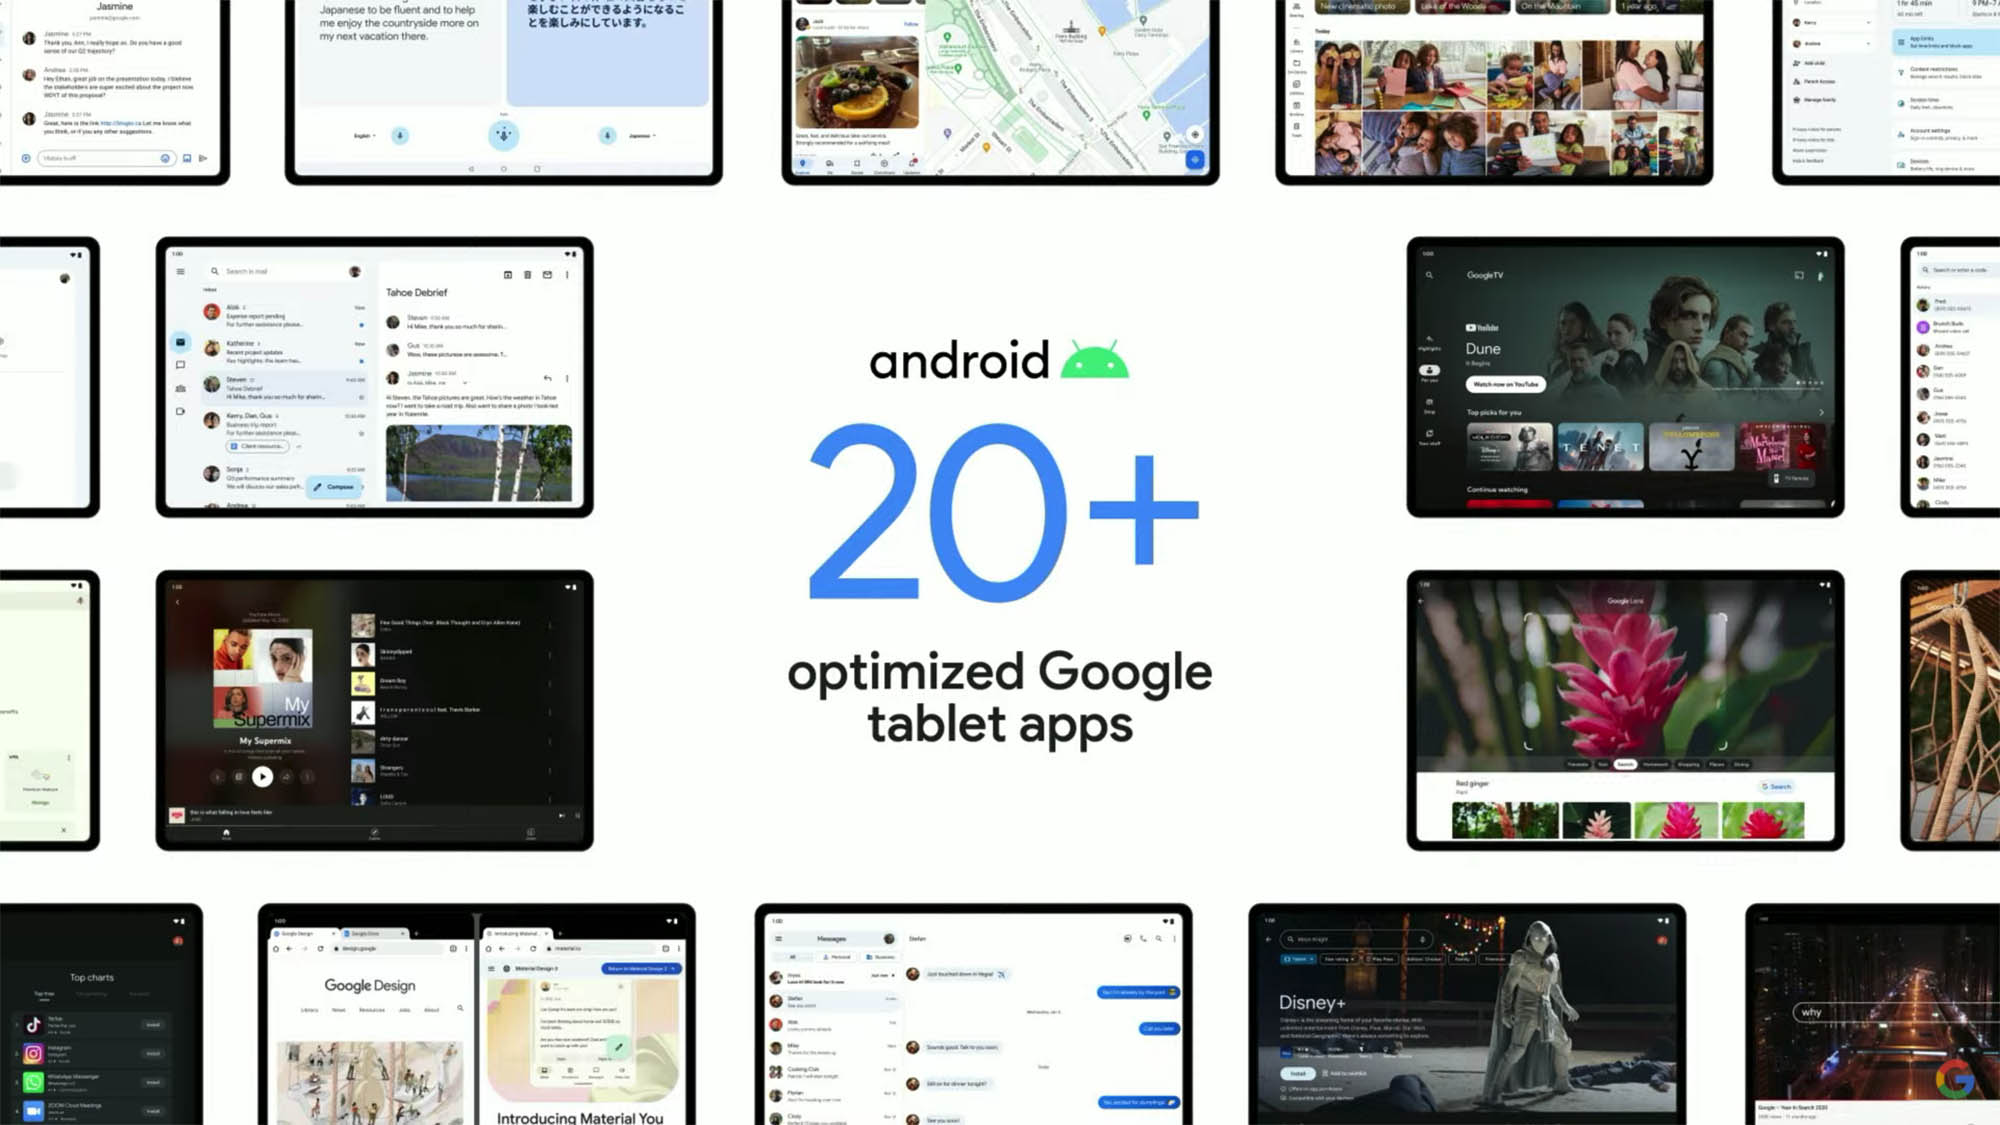 Mais de 20 aplicativos otimizados para tablet do Google na tela do evento.